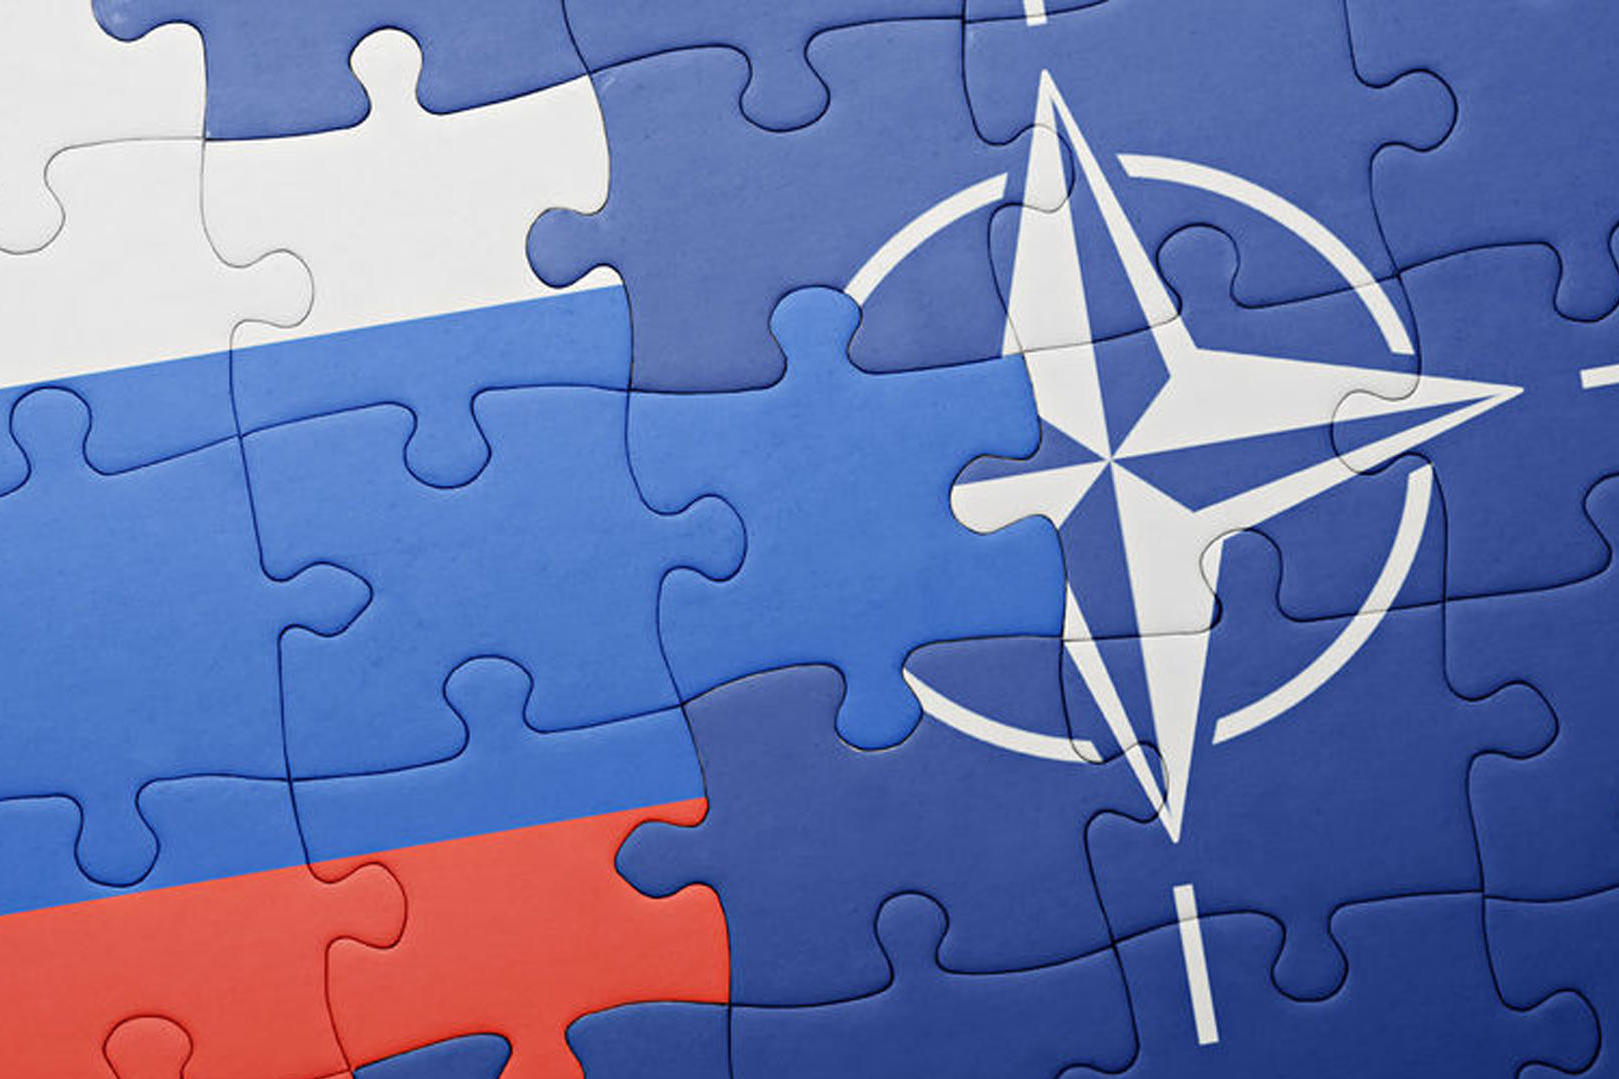 Немецкие СМИ: НАТО приготовилось к конфликту с Россией